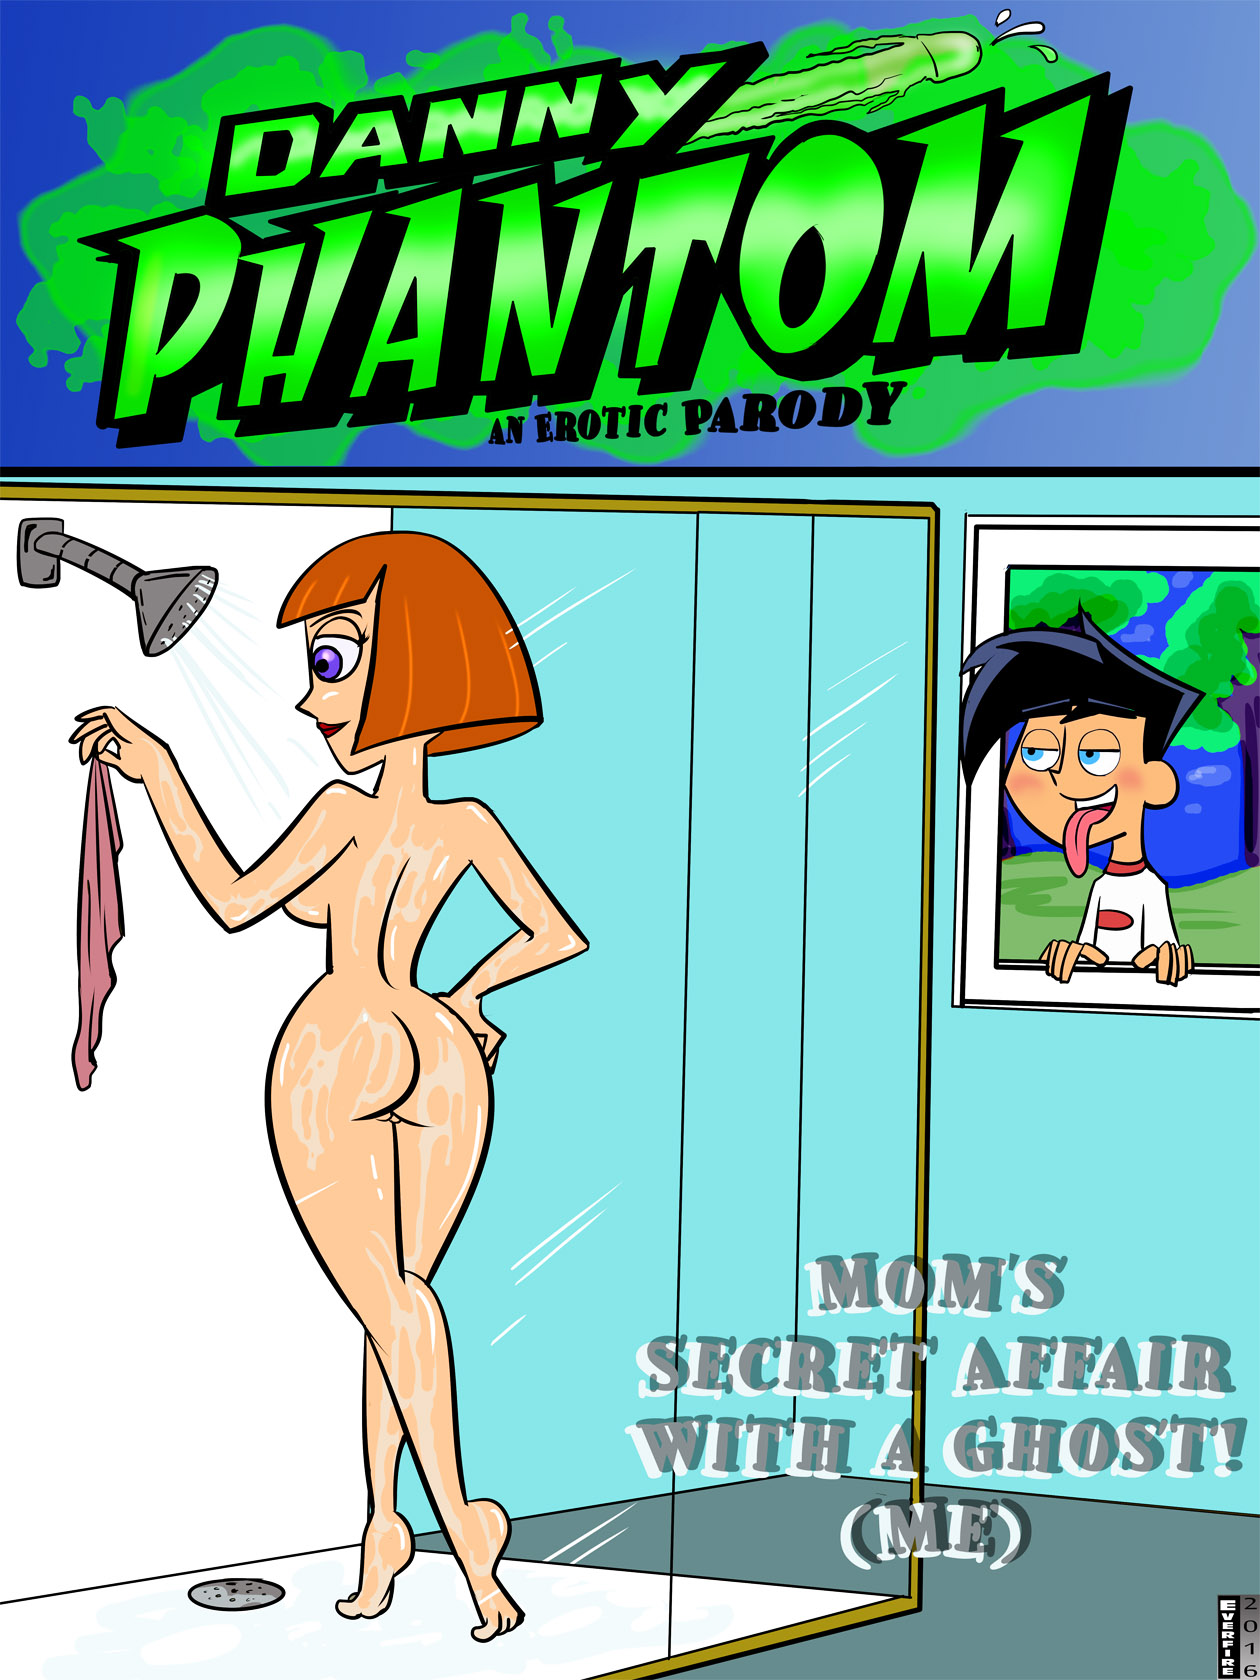 1260px x 1680px - Danny Phantom - [Everfire] - Danny Phantom #1 - Mom's Secret Affair With A  Ghost! (Me) xxx | SureFap